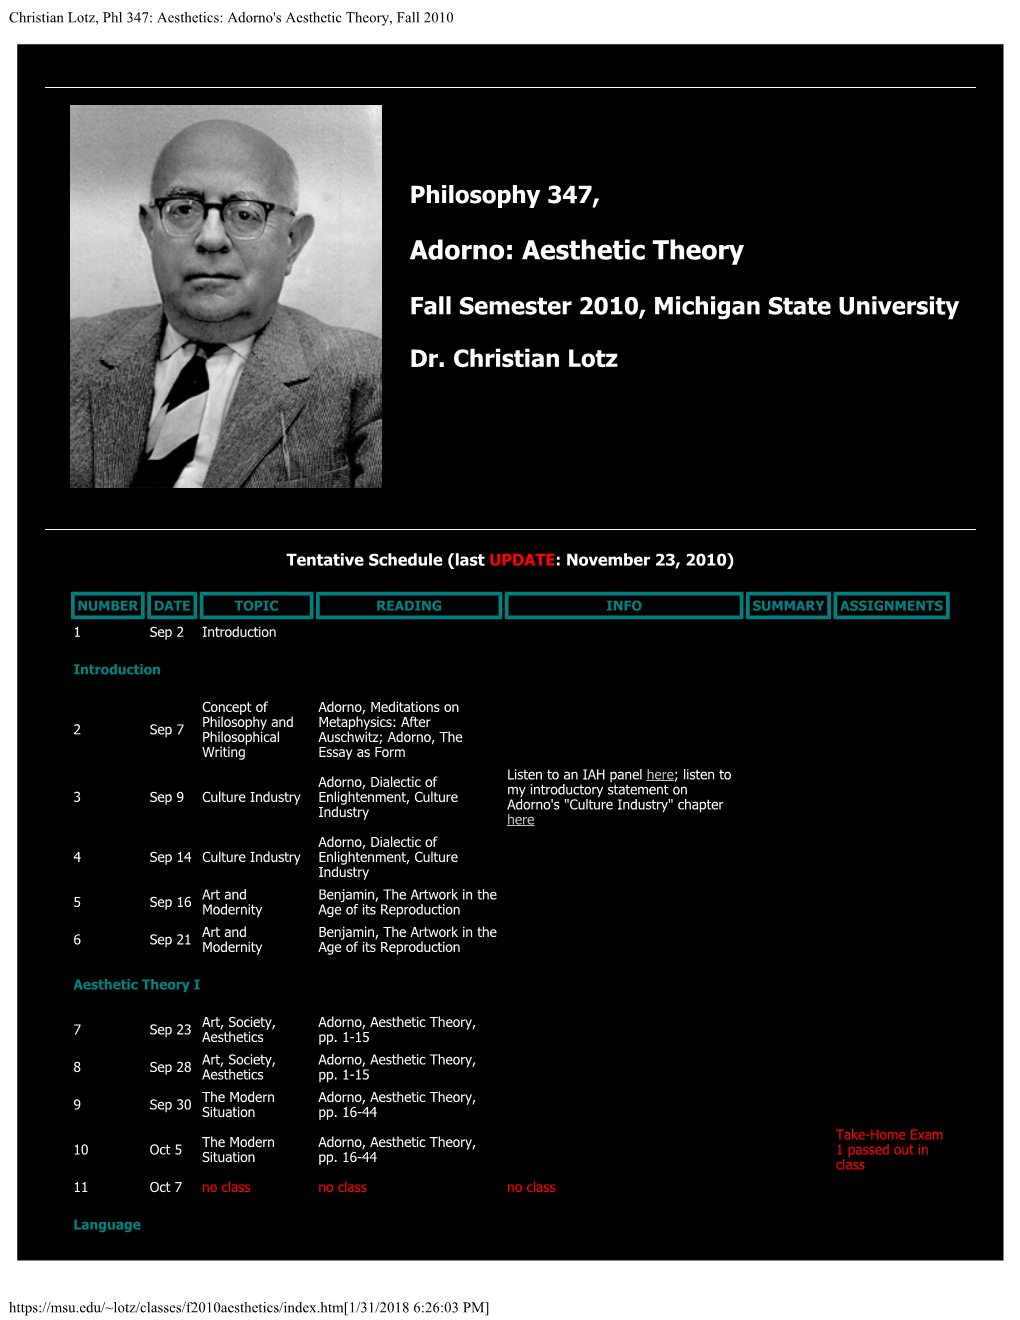 Aesthetics: Adorno's Aesthetic Theory, Fall 2010